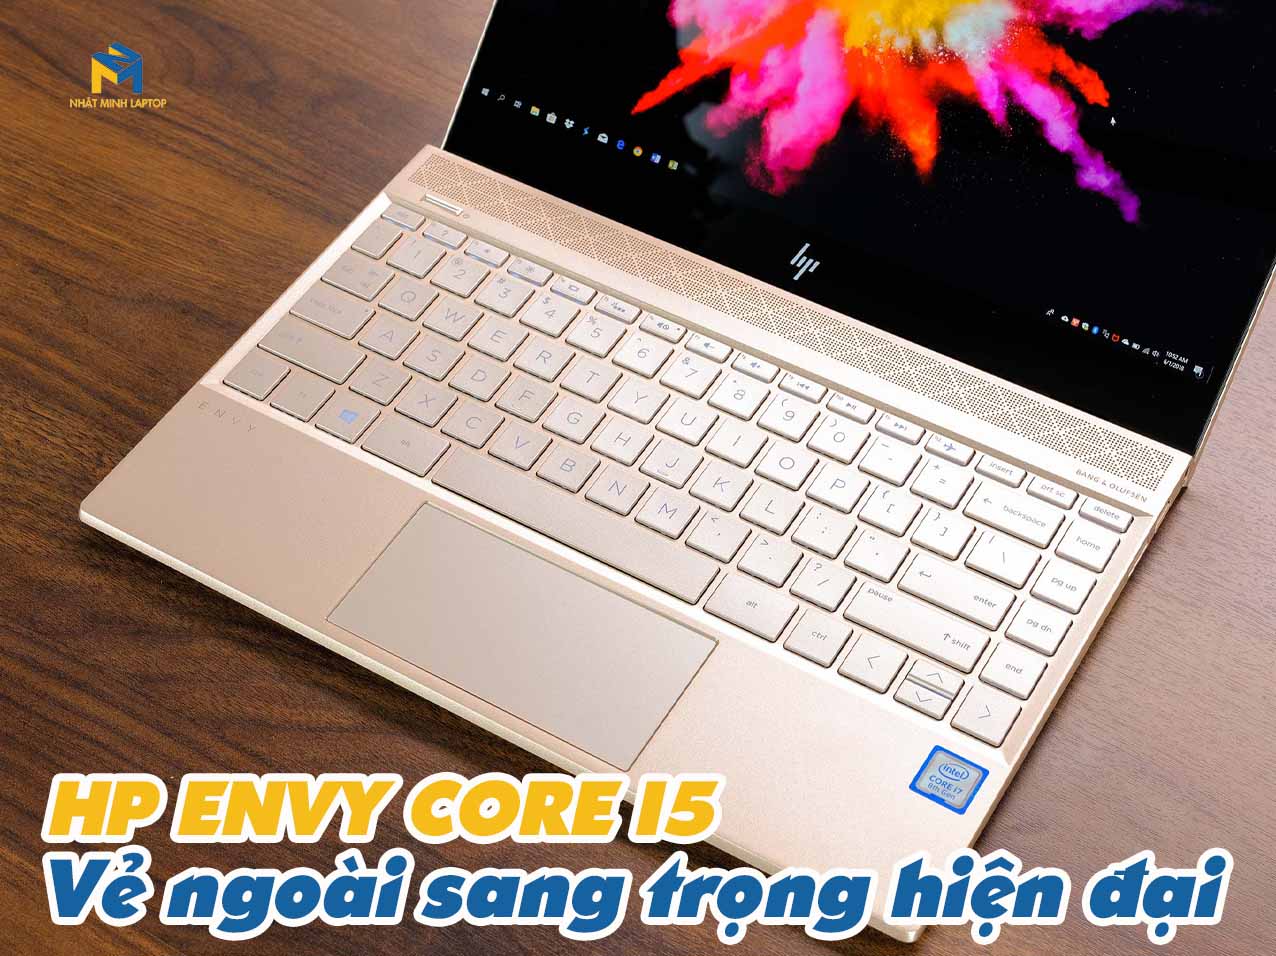 Laptop HP Envy i5 - Vẻ ngoài siêu mỏng hiện đại